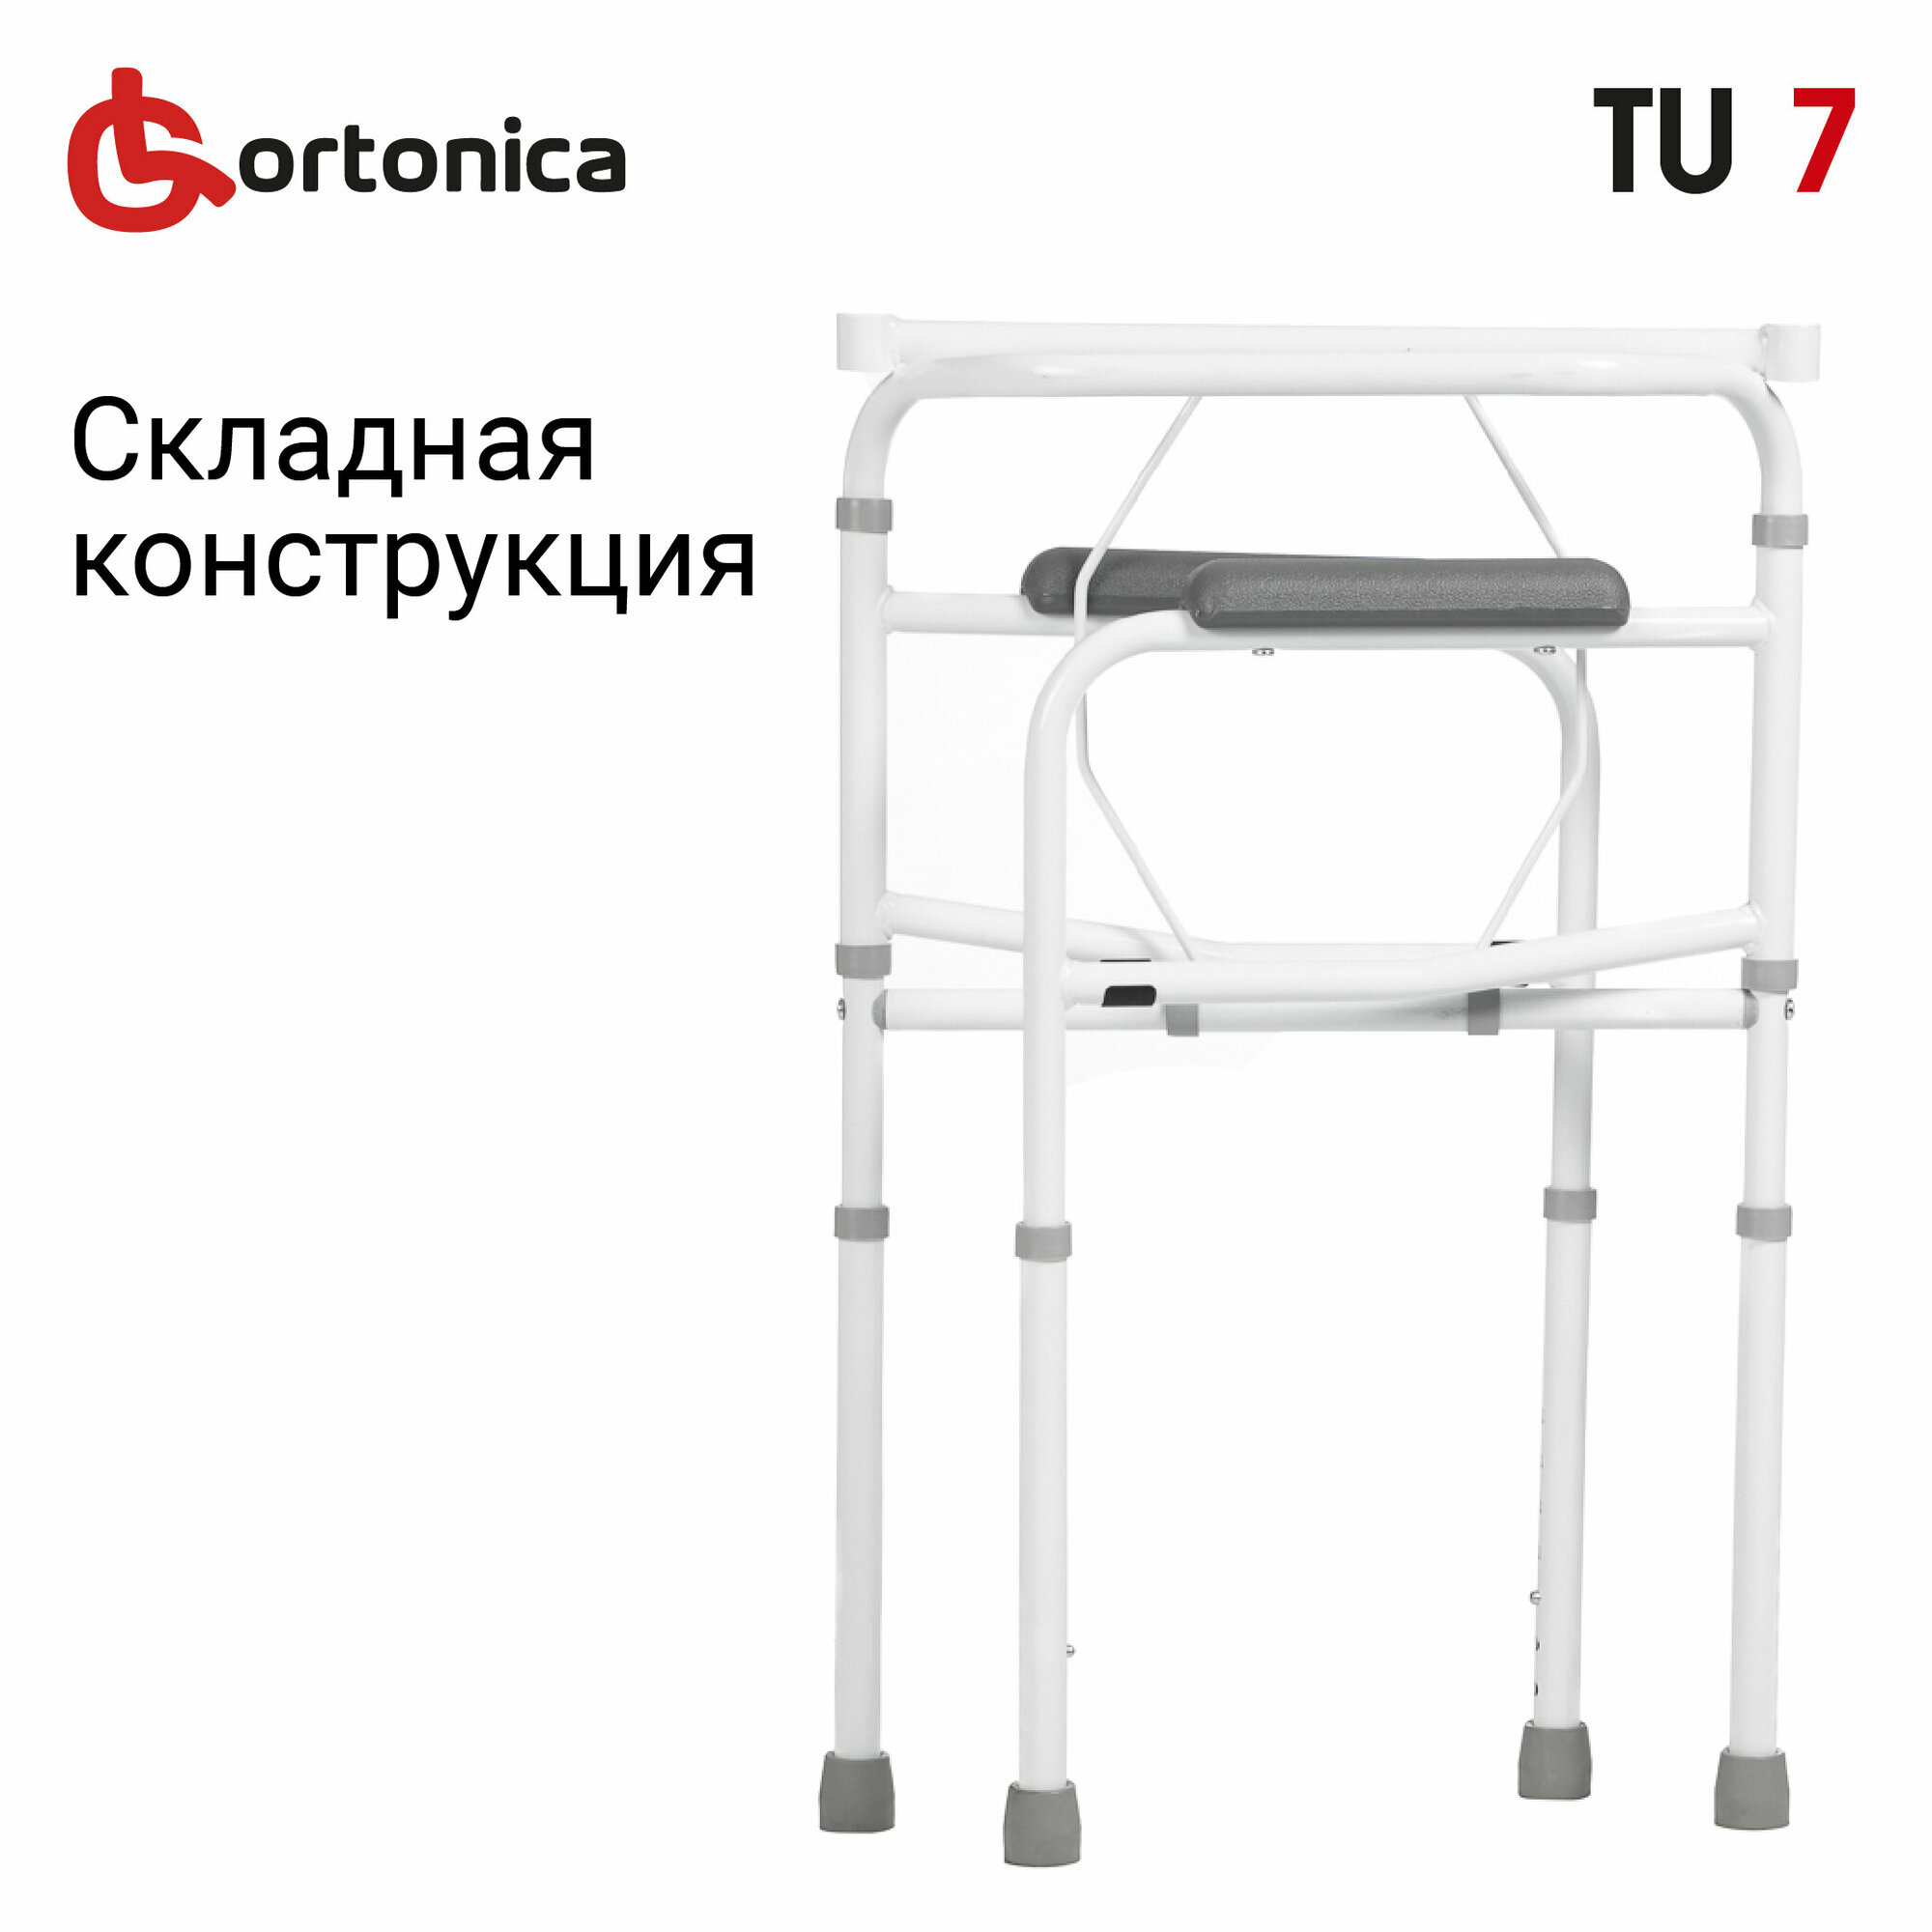 Cтул туалет для пожилых и инвалидов складной регулируемый по высоте Ortonica TU 7 ширина сиденья 43 см до 120 кг Код ФСС 23-01-02